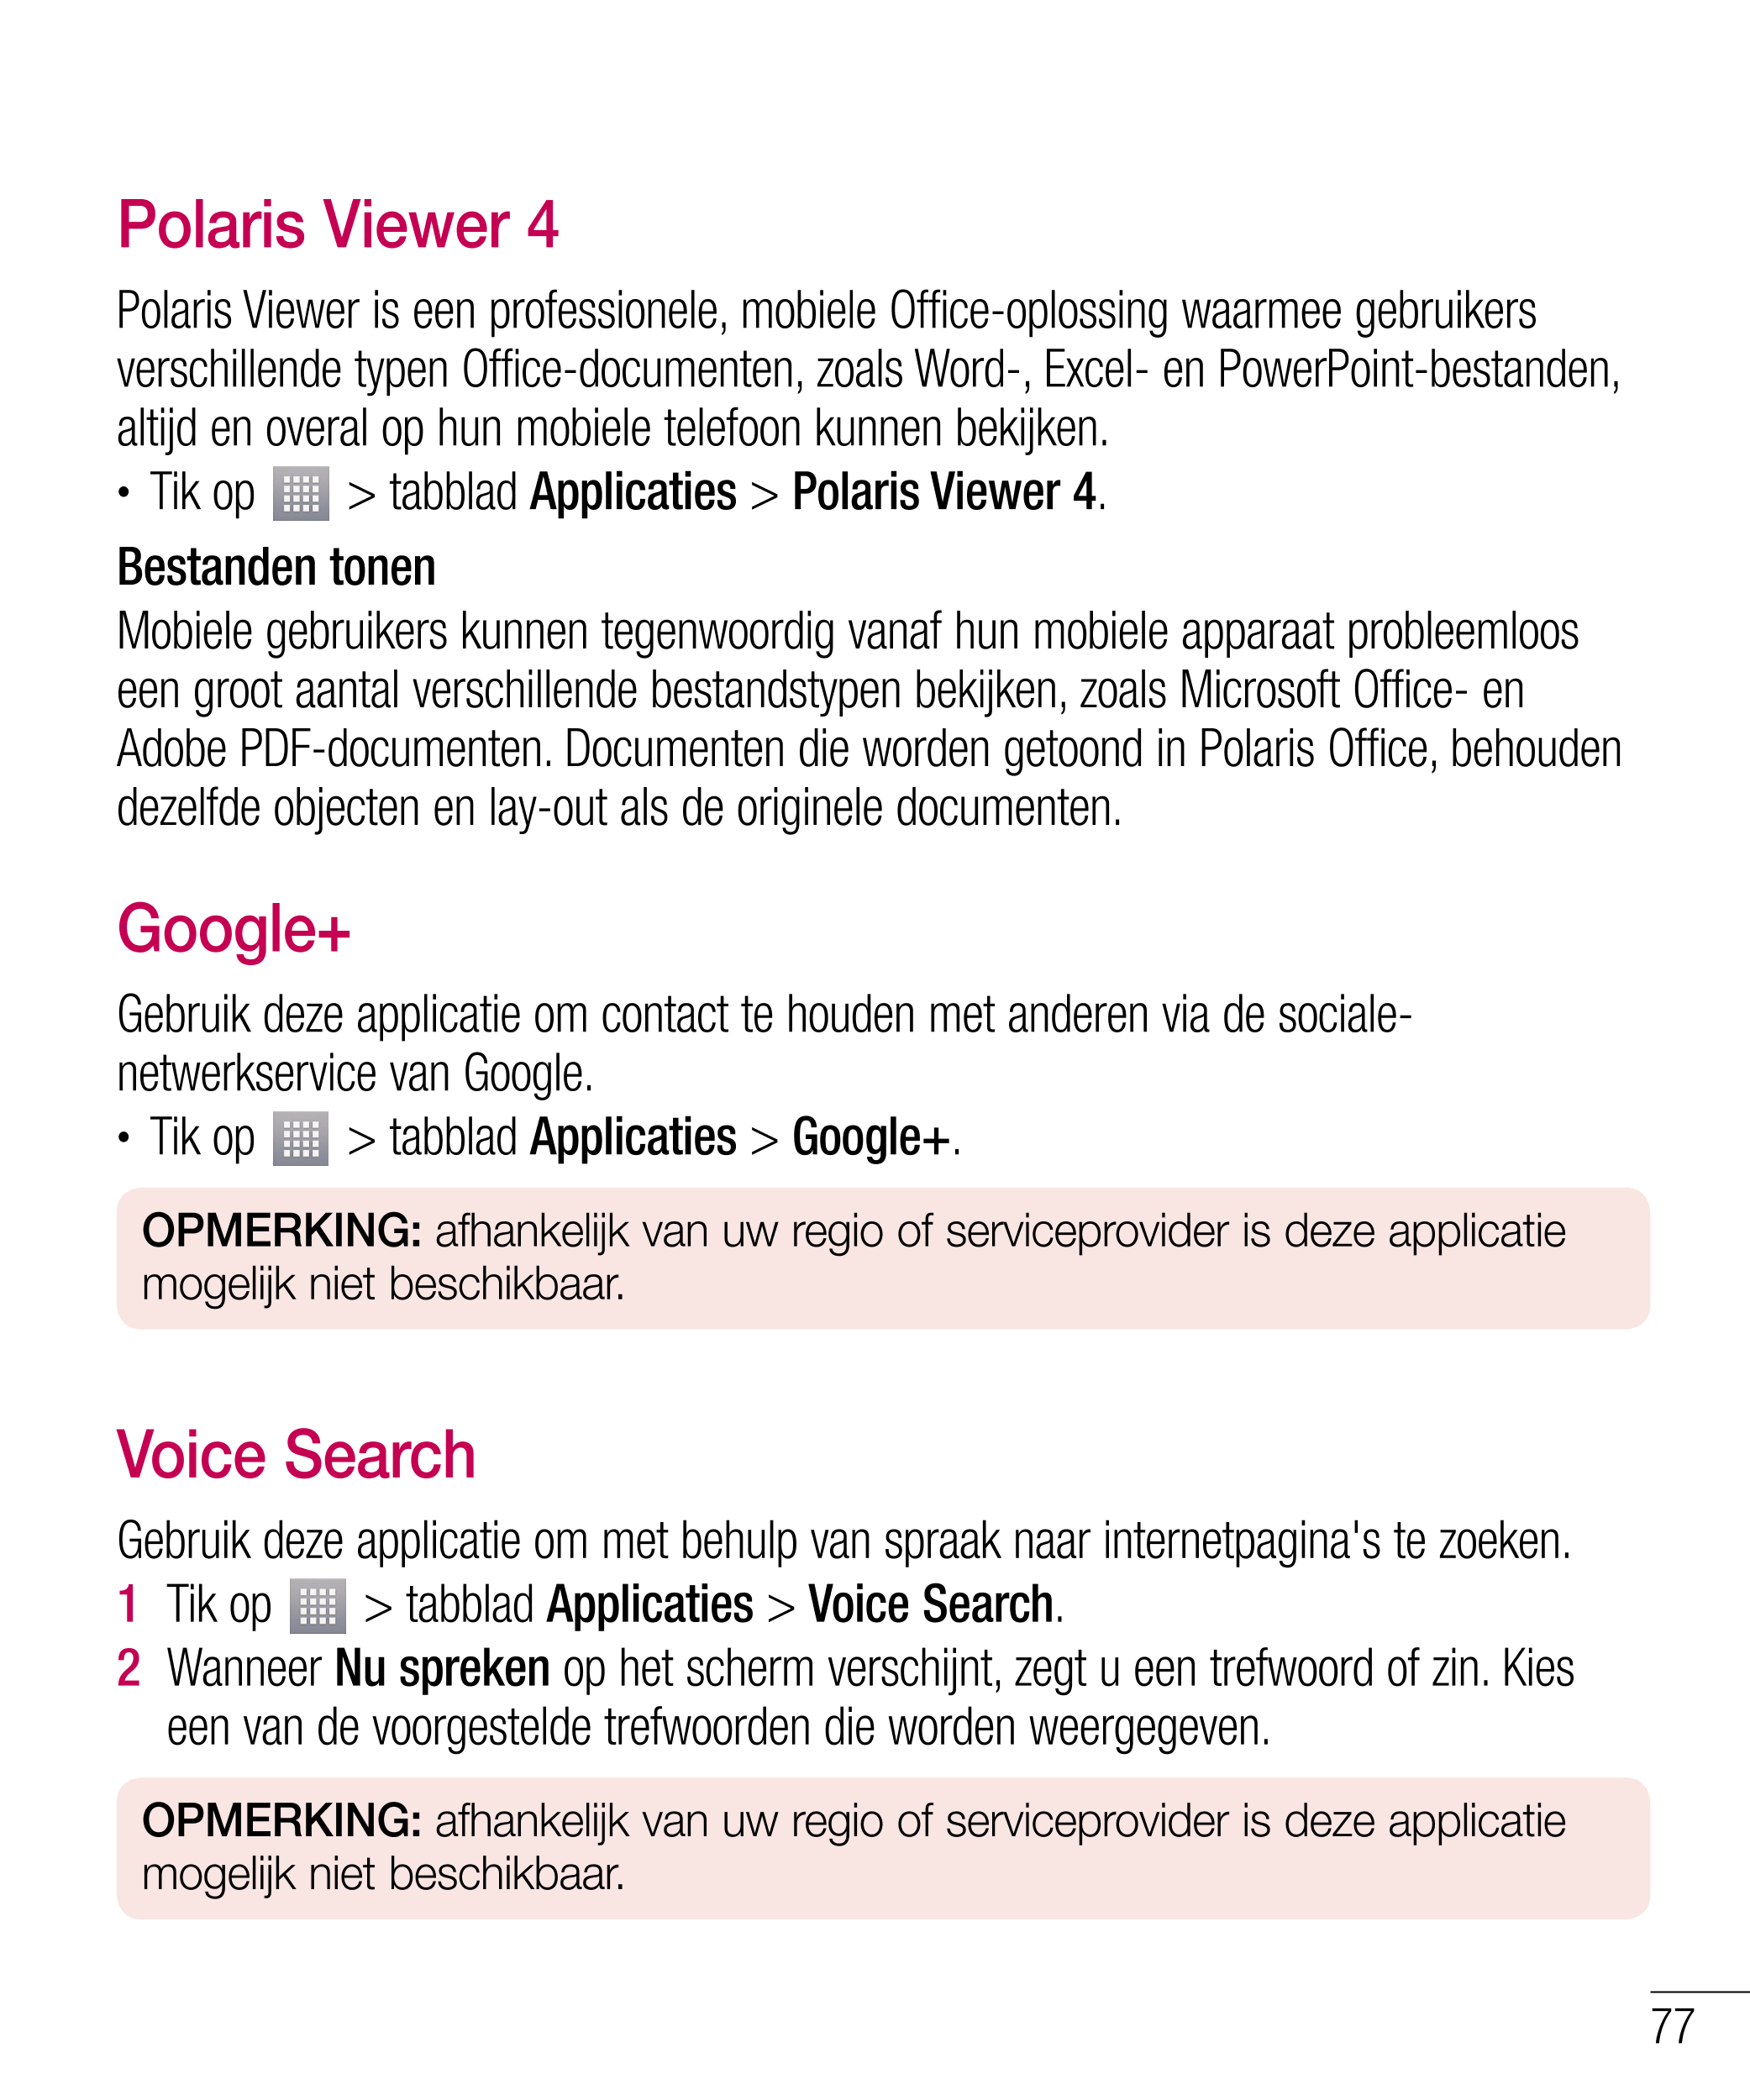 Polaris Viewer 4
Polaris Viewer is een professionele, mobiele Office-oplossing waarmee gebruikers 
verschillende typen Office-do